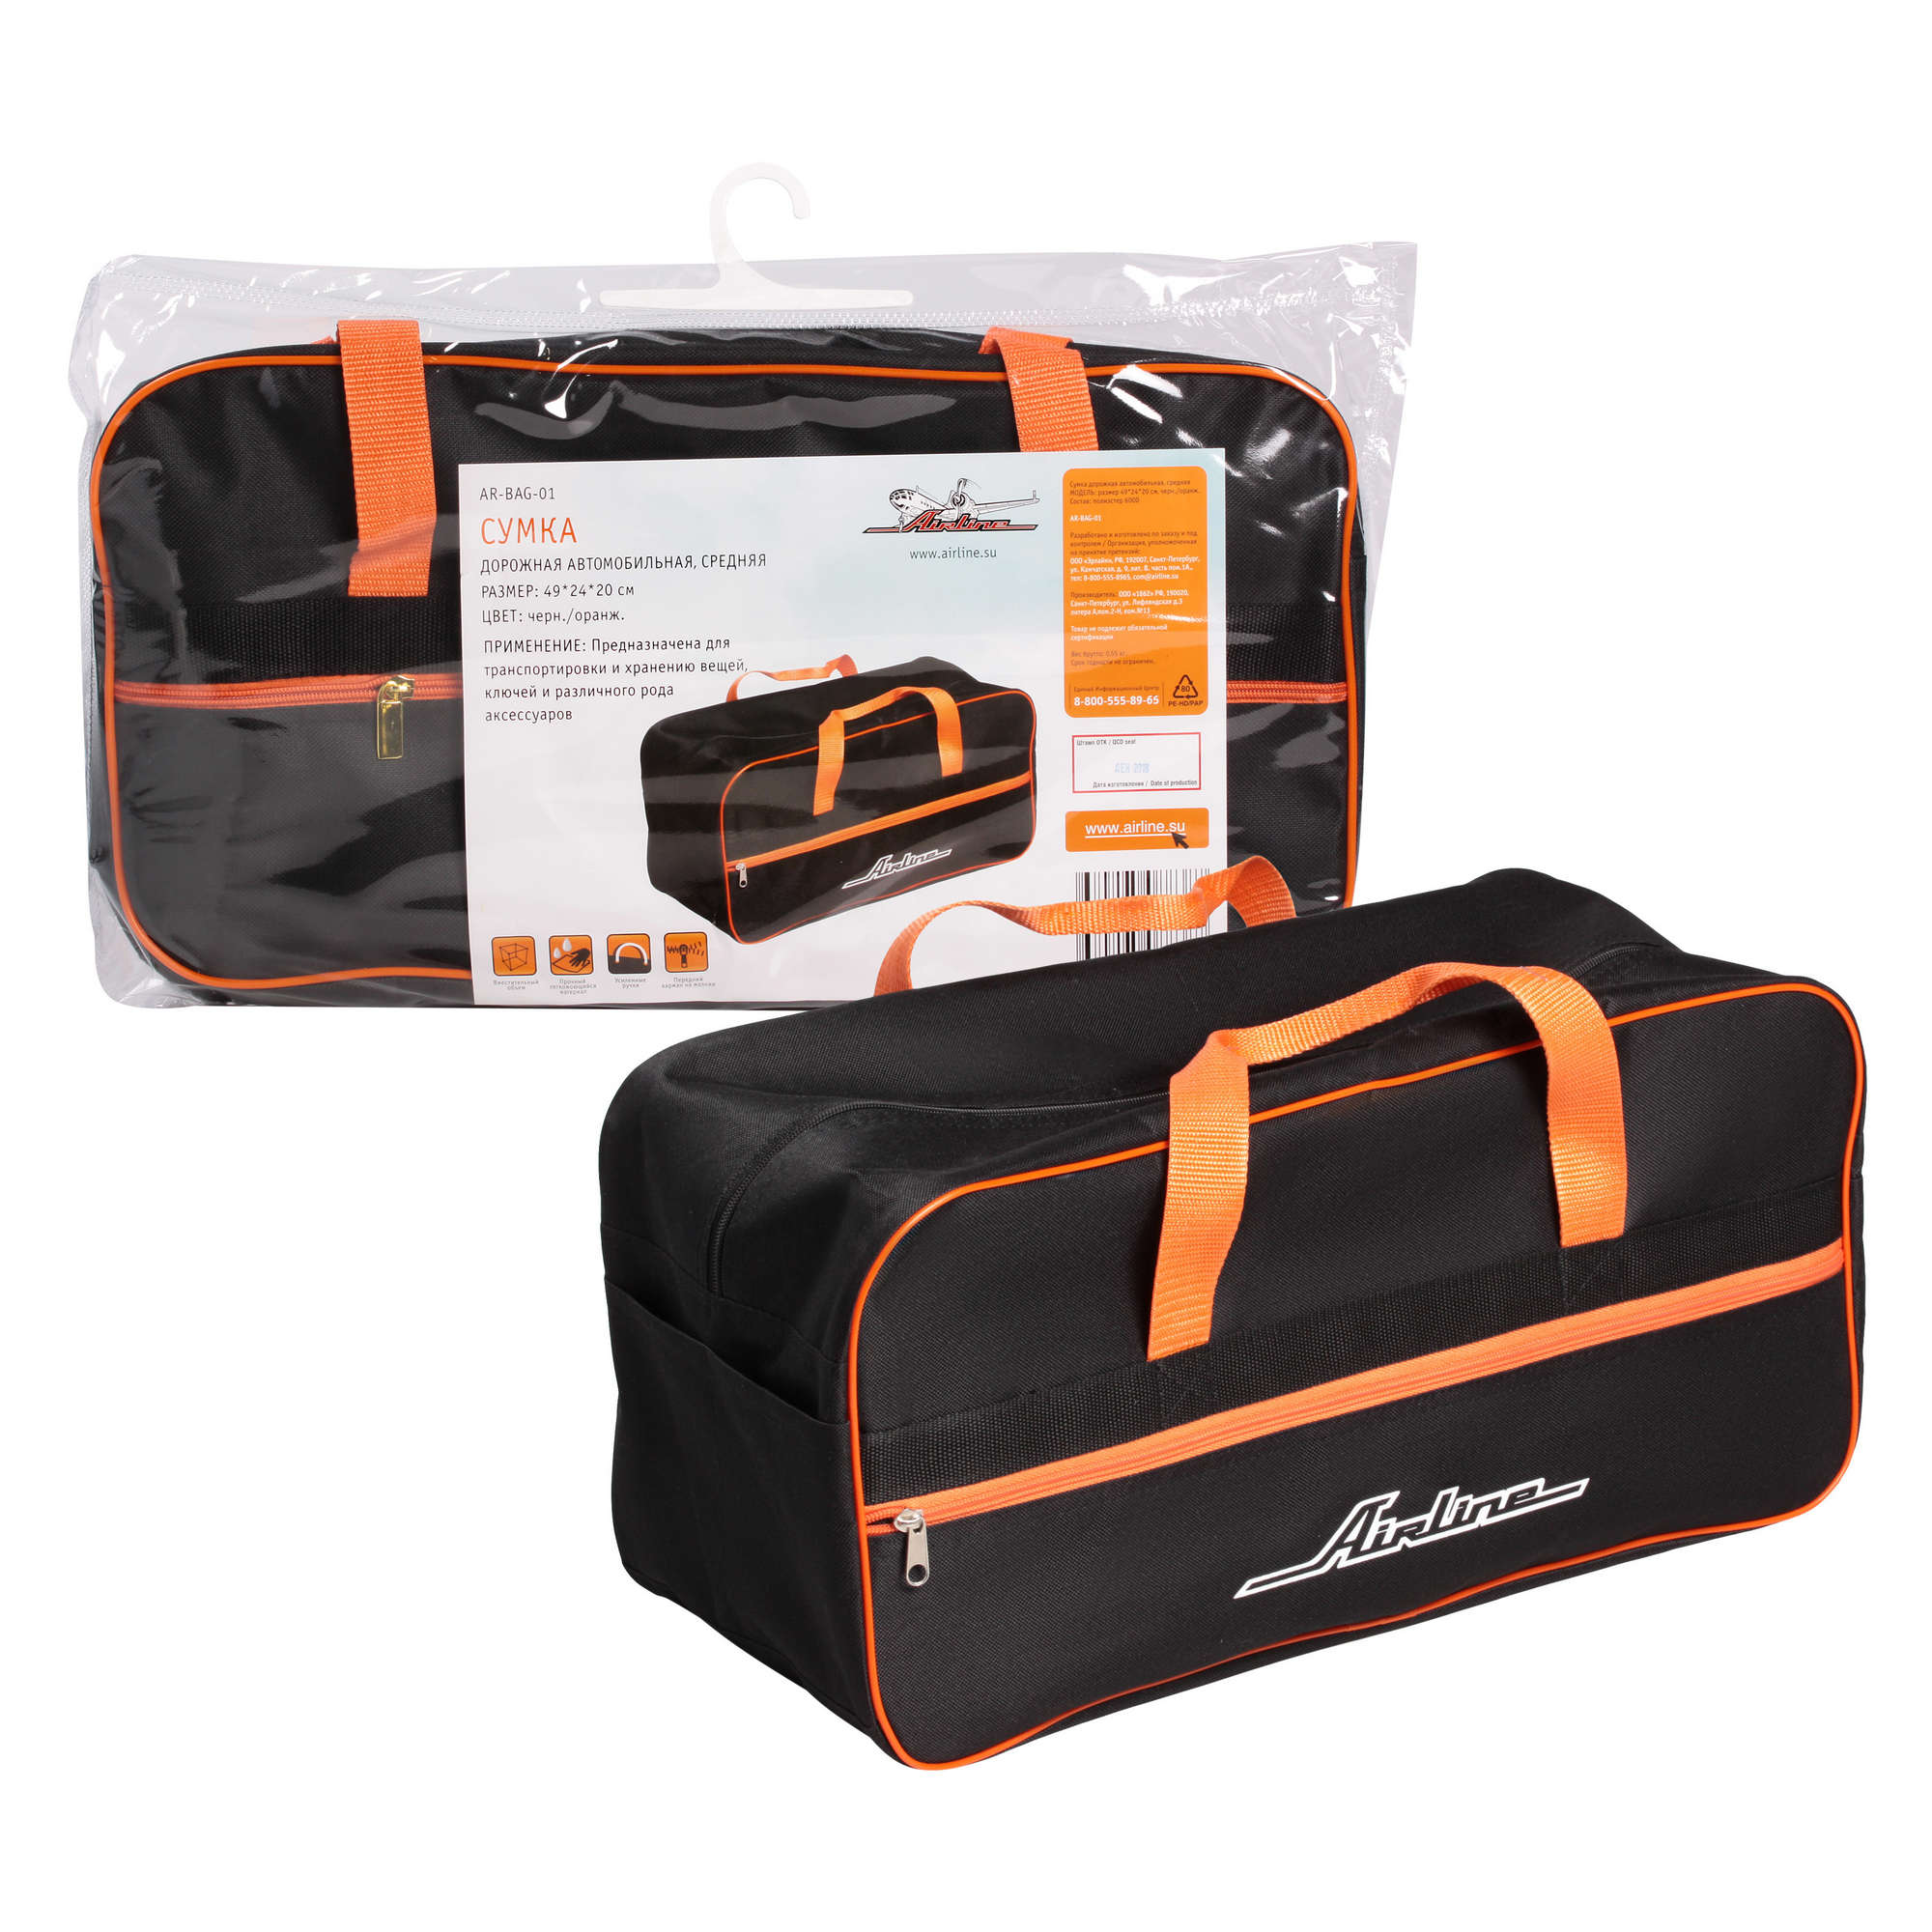 AIRLINE AR-BAG-01 (ARBAG01) сумка дорожная автомобильная, средняя (492420 см), черн. / оранж.(ar-bag-01